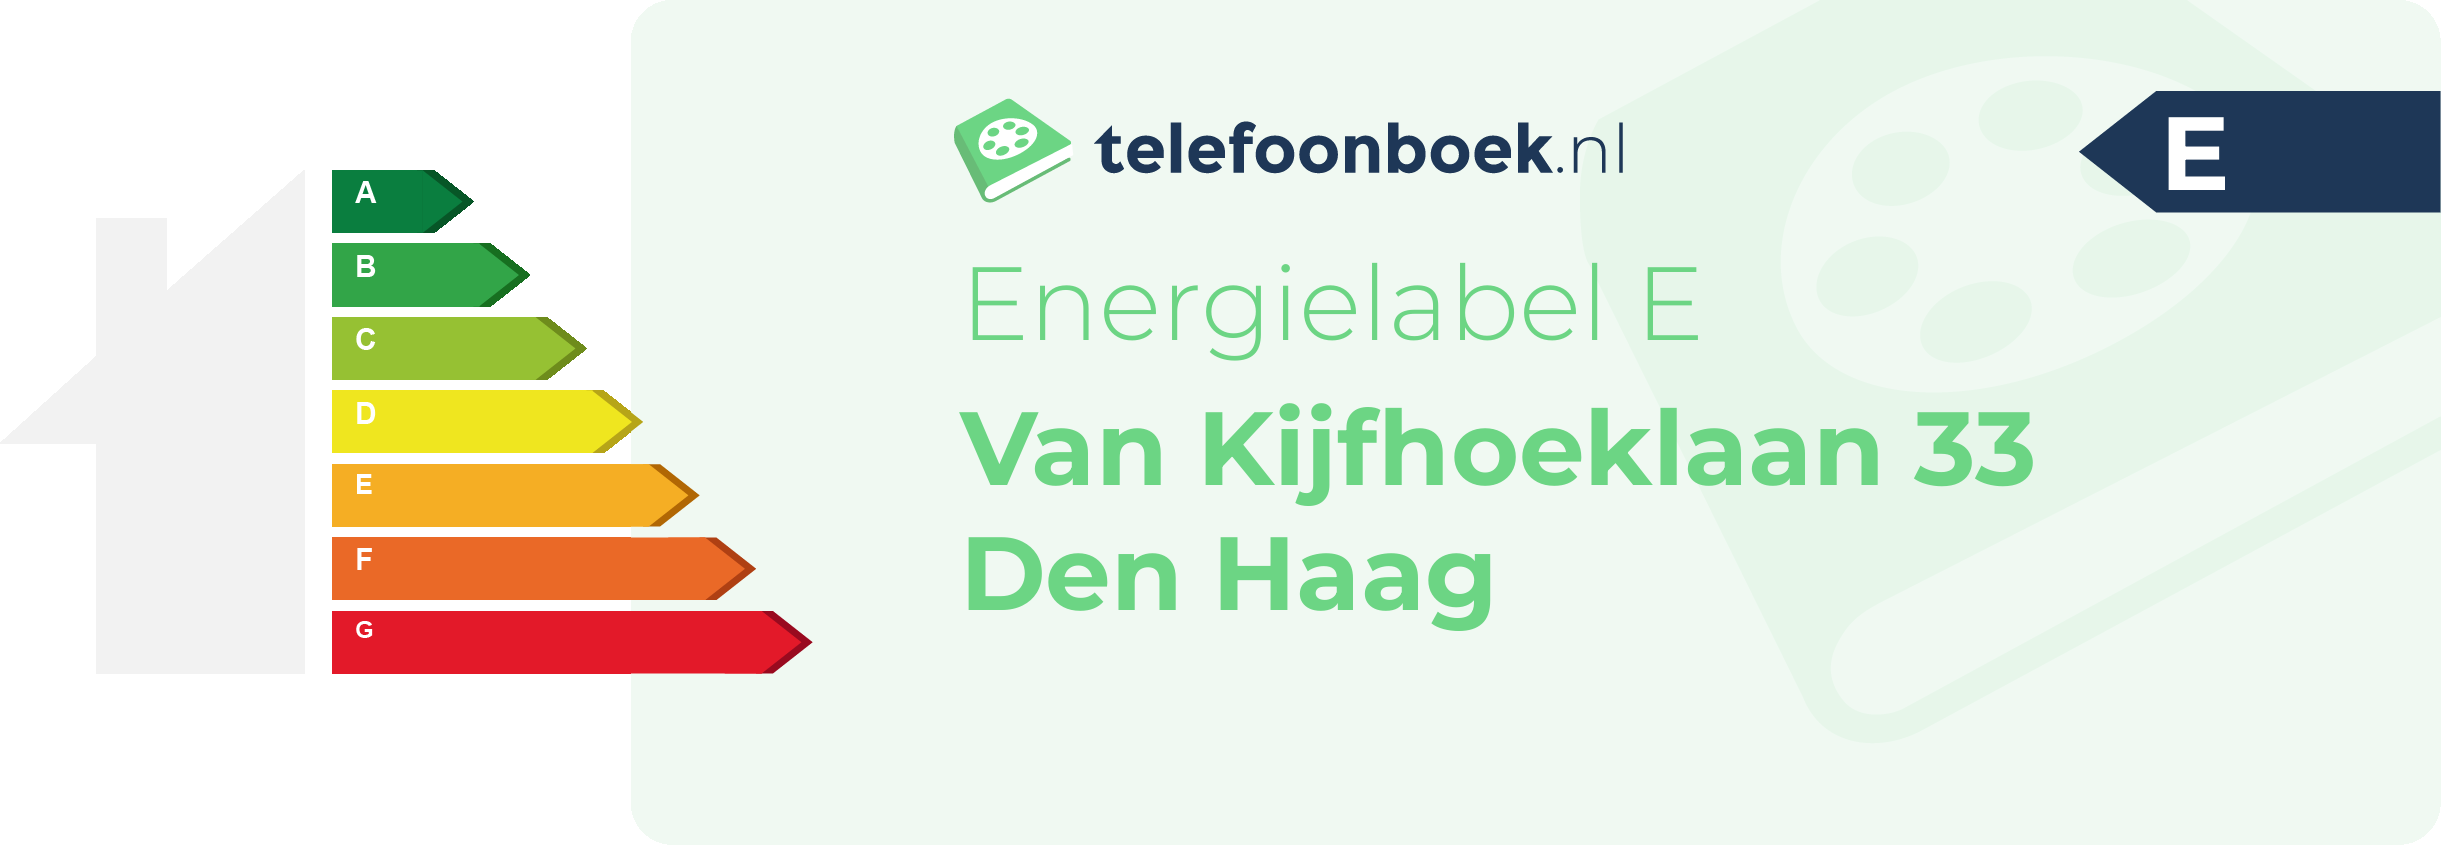 Energielabel Van Kijfhoeklaan 33 Den Haag